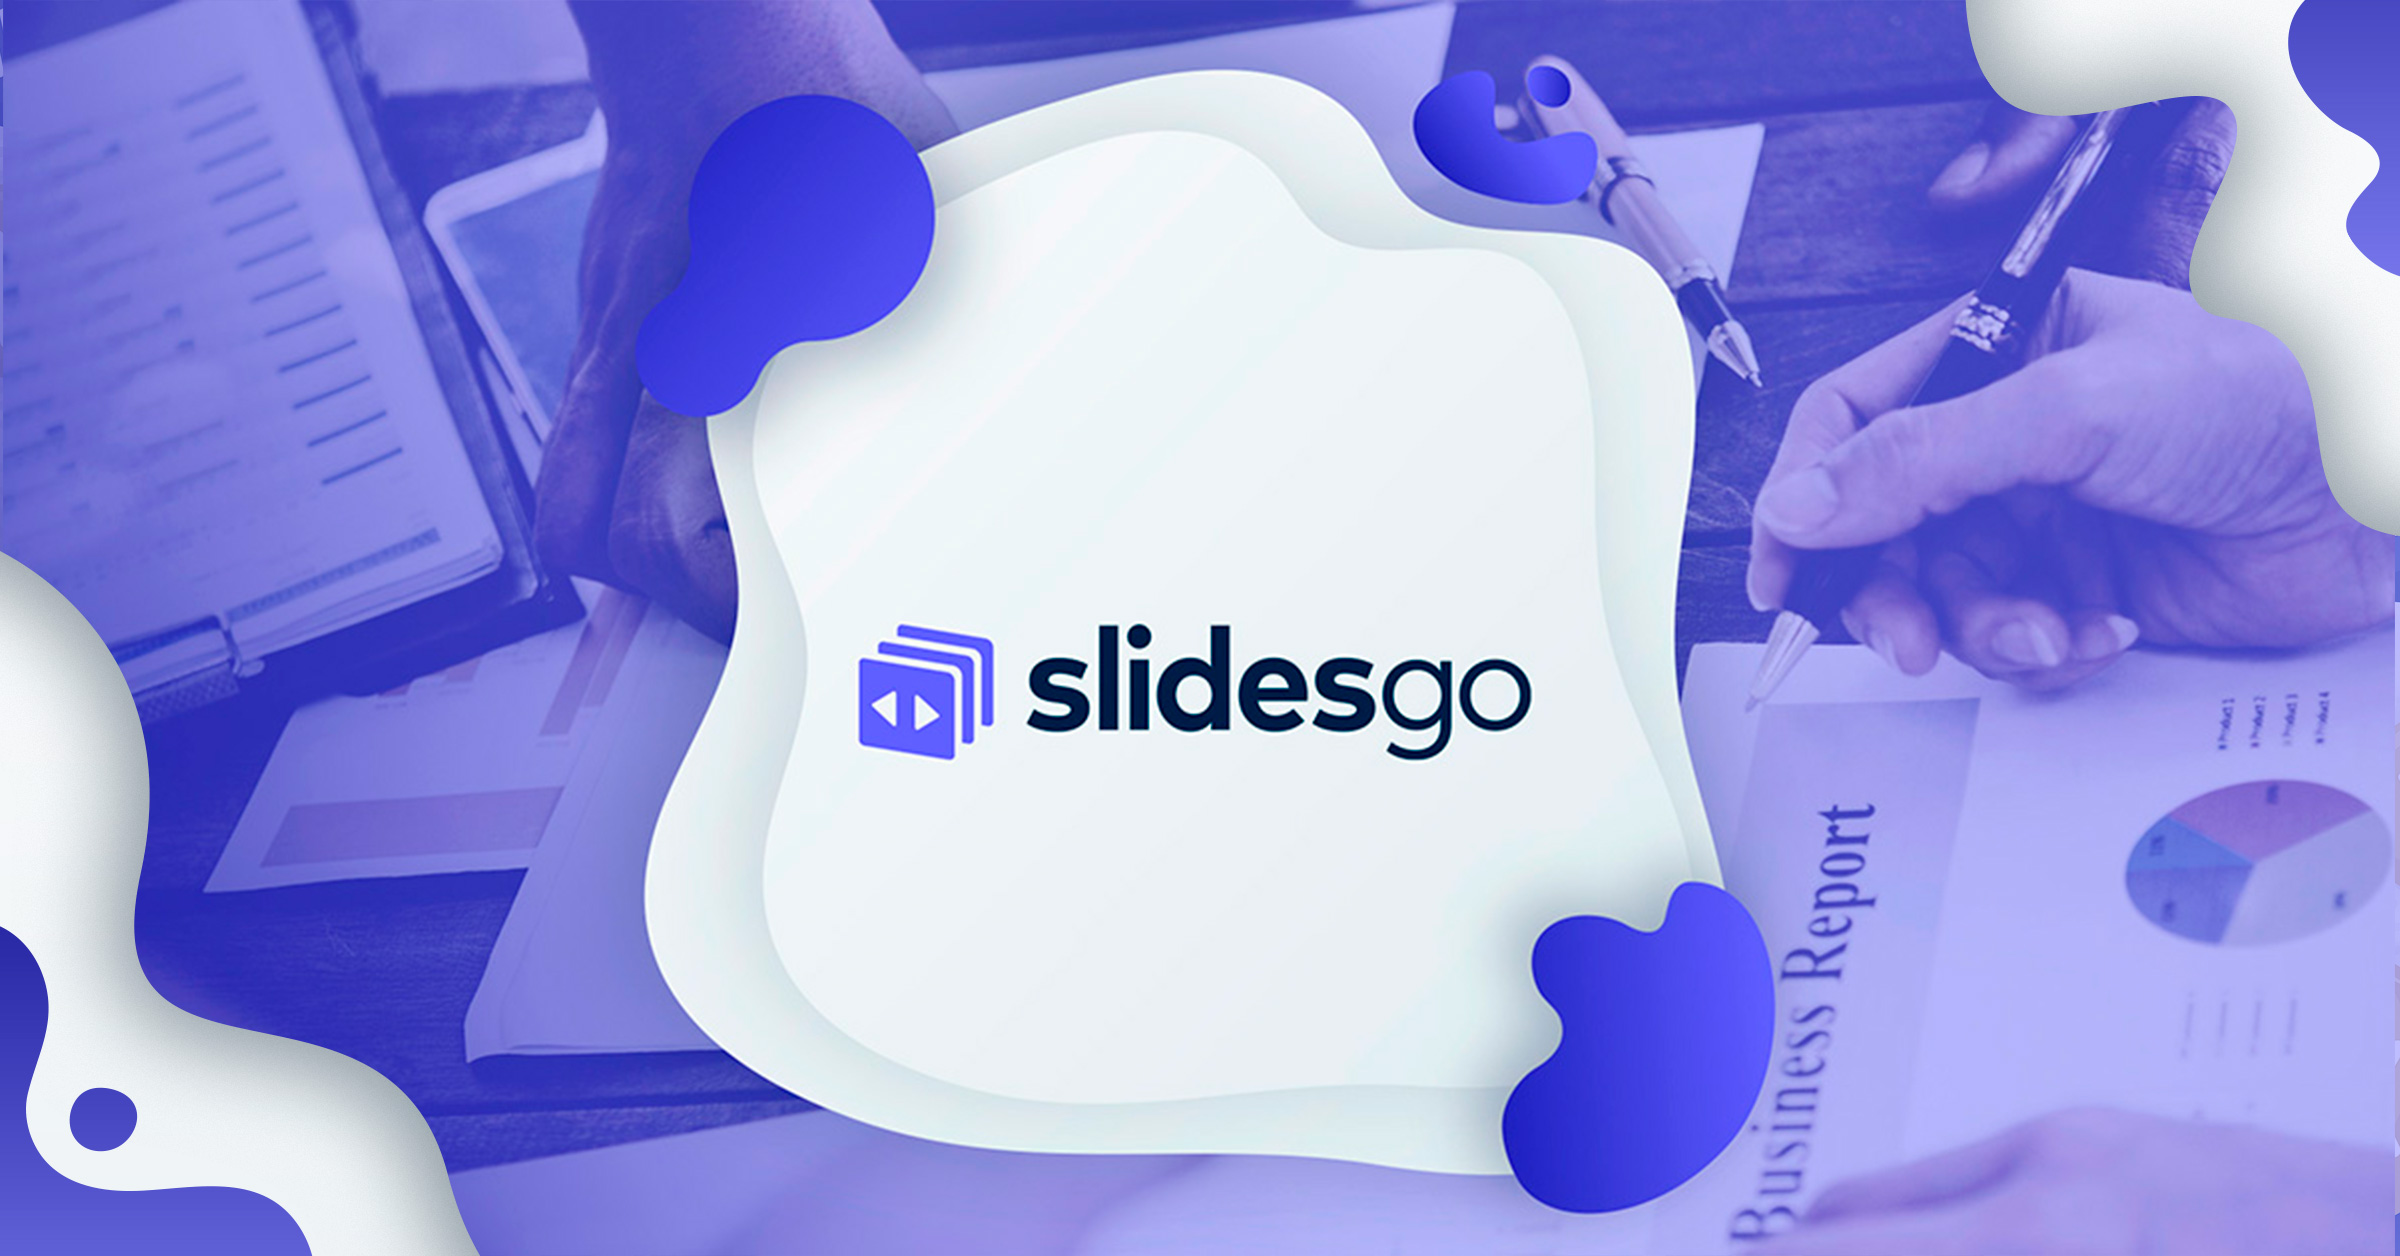 slidesgo logo - slidesgo Business Report